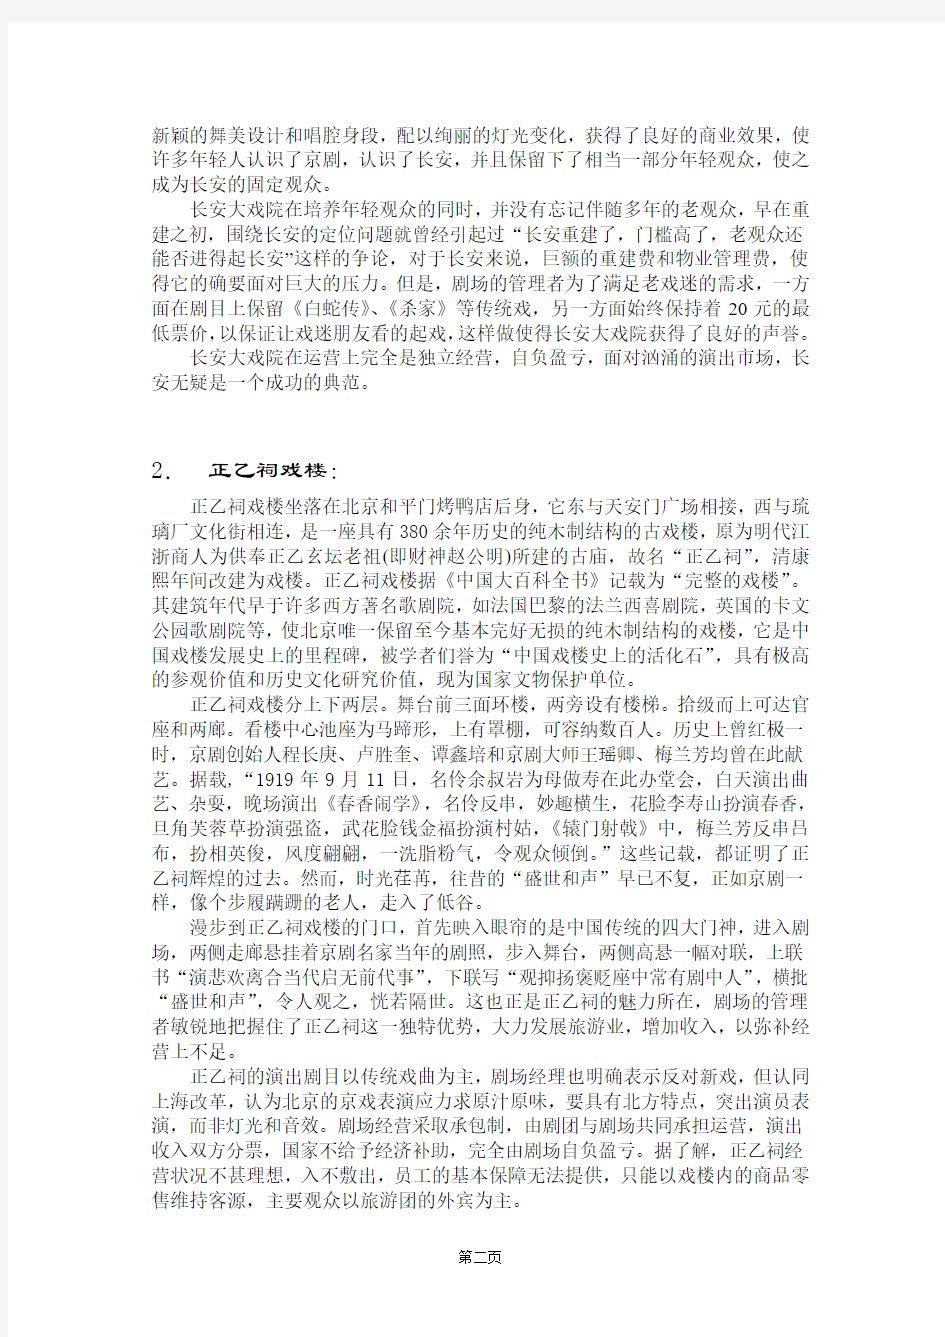 关于北京演出市场调查(剧场部分)的报告2002.6.10